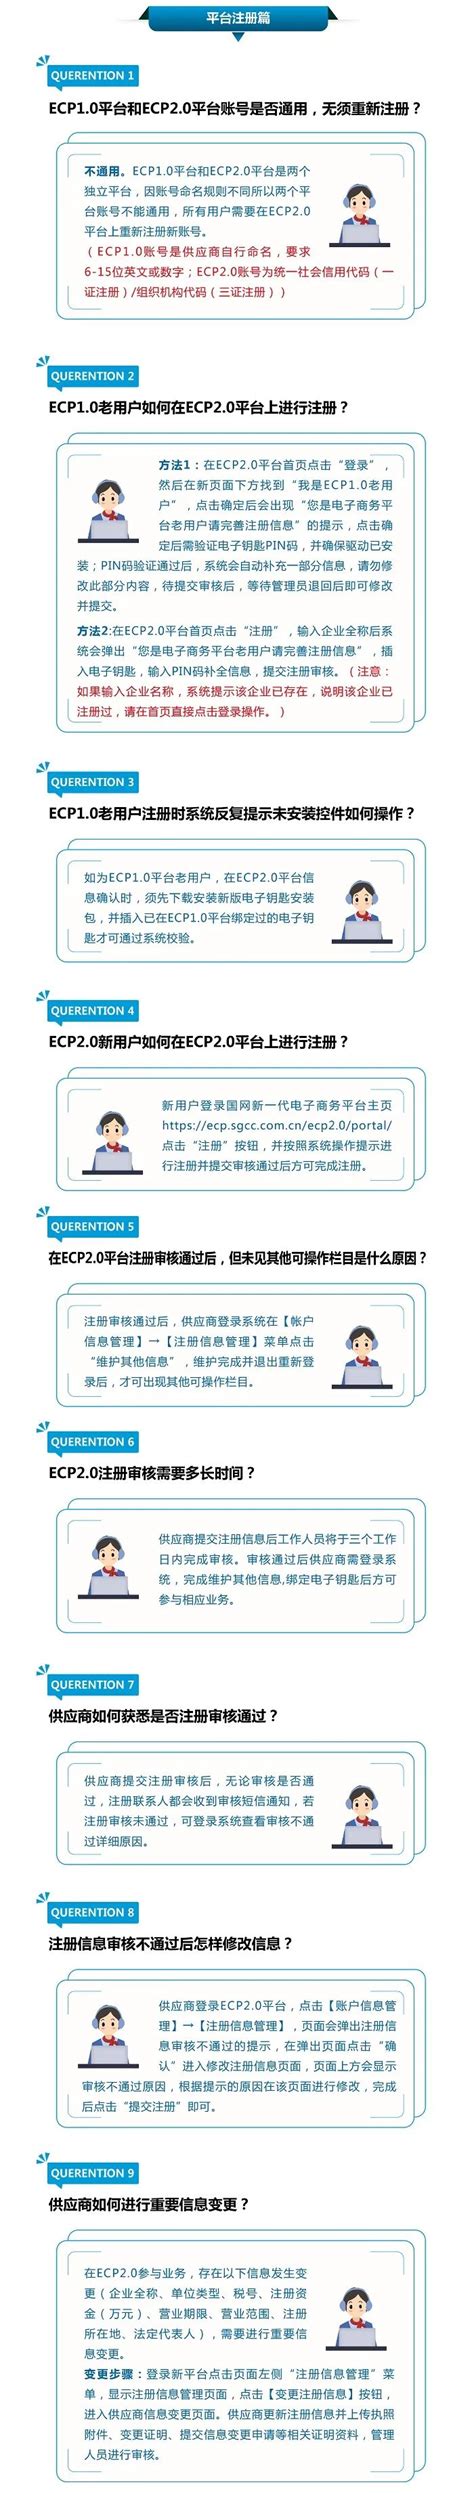 电子渠道平台（ECP）-北京浩丰创源科技股份有限公司